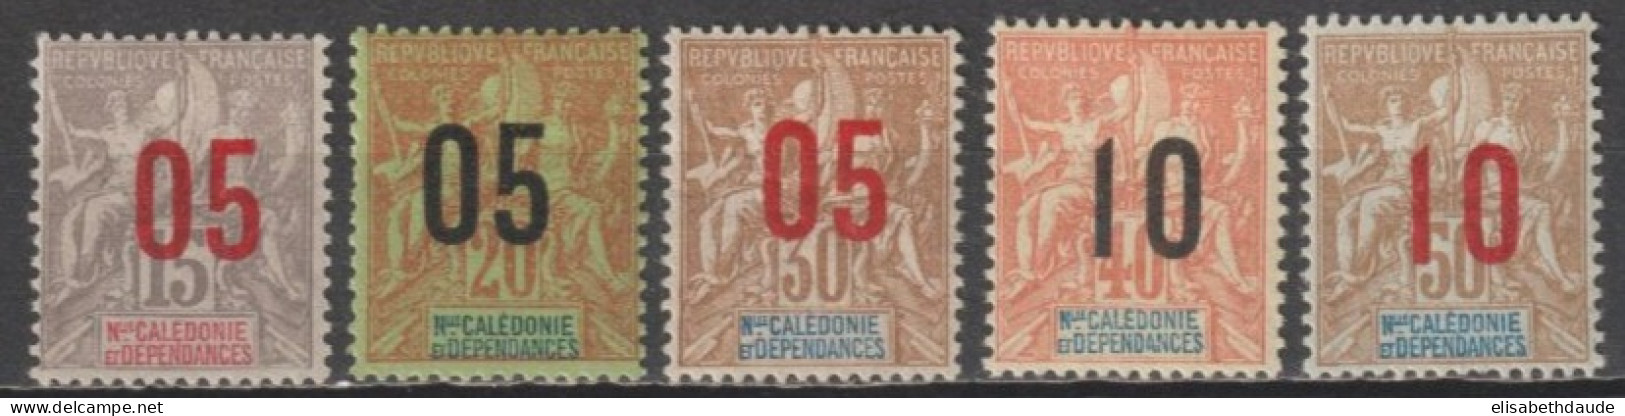 NOUVELLE CALEDONIE - 1912 - SERIE COMPLETE YVERT N°105/109 * MLH - COTE = 12.5 EUR - Ongebruikt